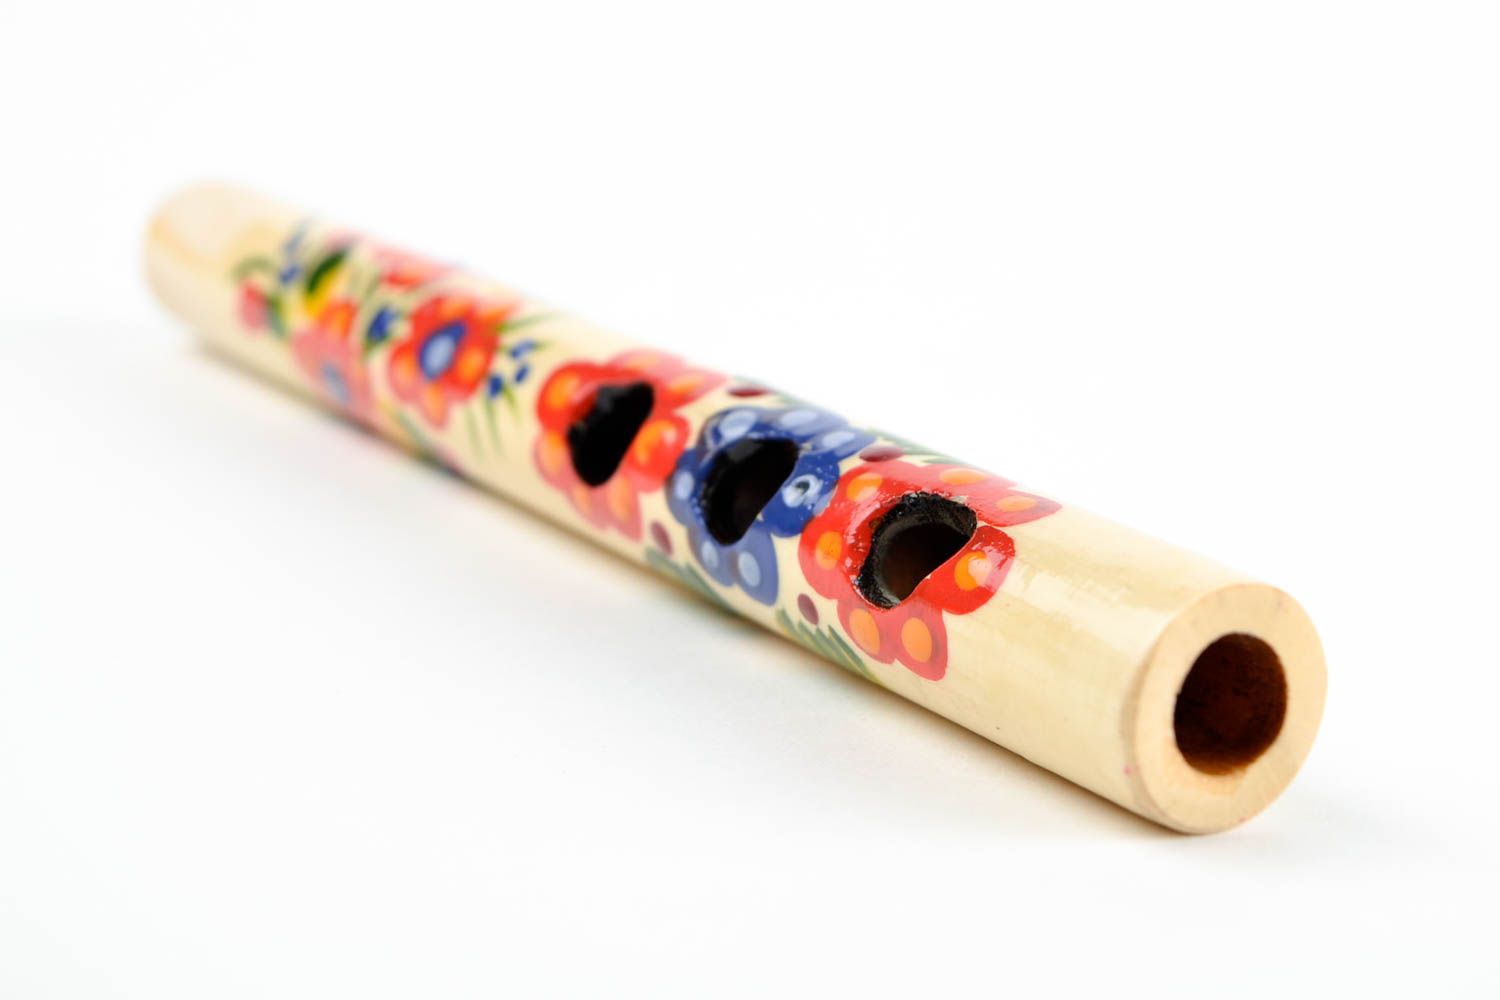 Silbato de madera pintado instrumento musical artesanal souvenir original foto 4